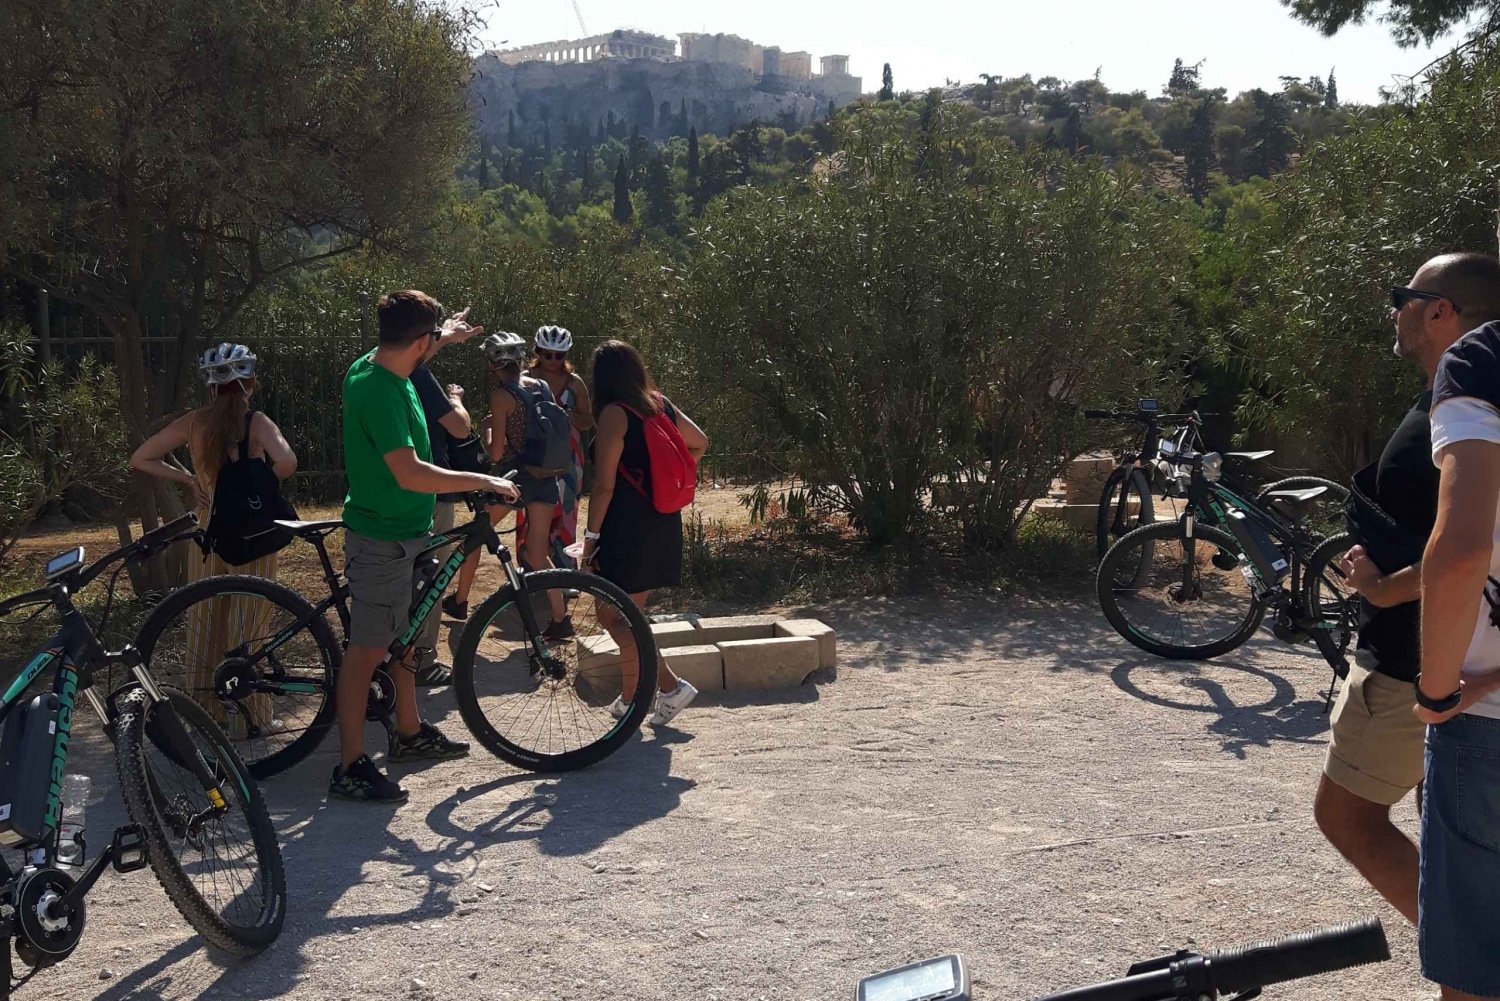 Aten: Tur på e-bike i det historiska centrumet: Natursköna cykelturer